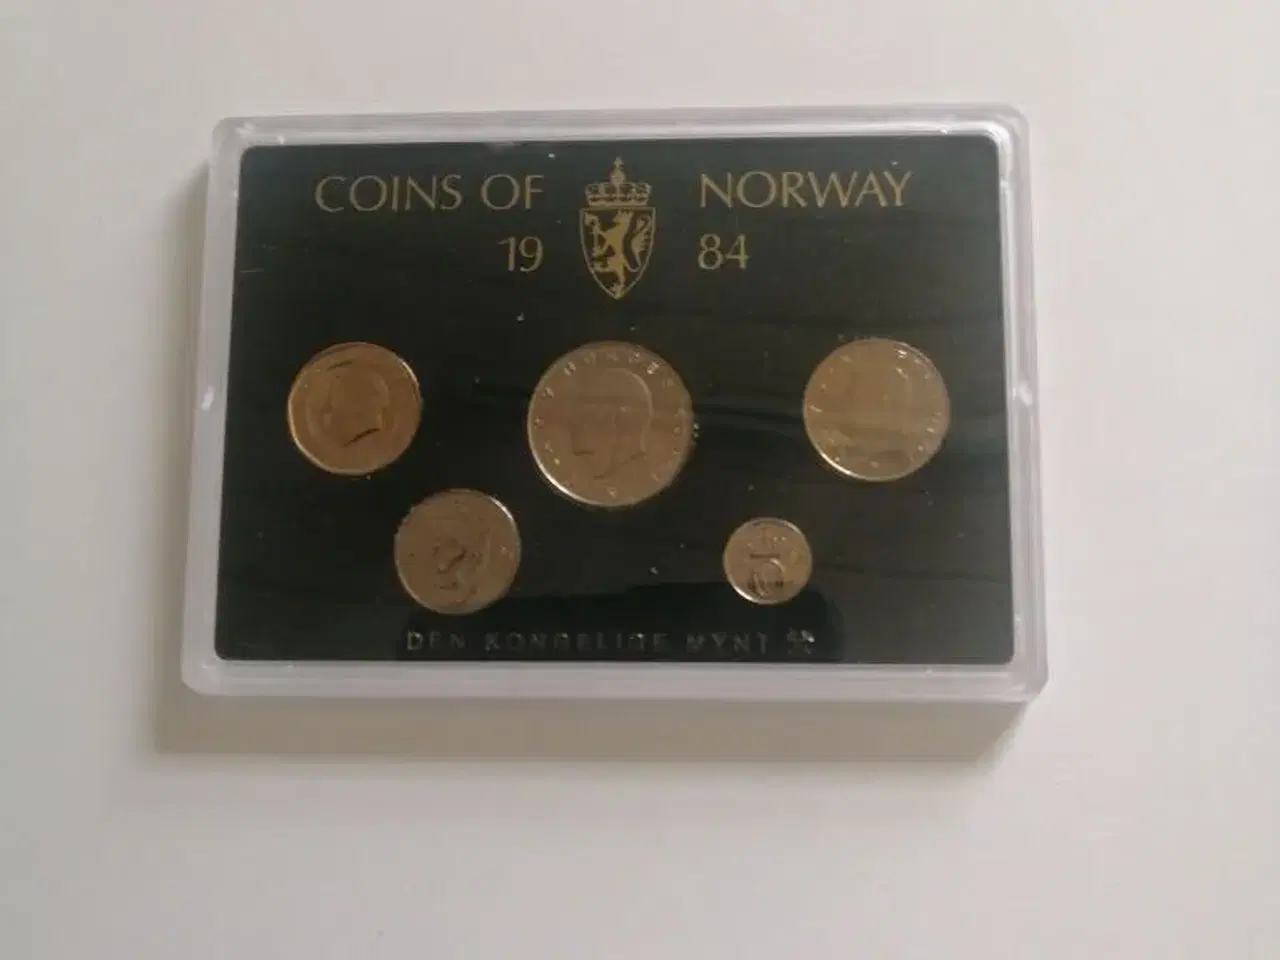 Billede 2 - Norge møntsæt kom med et bud.